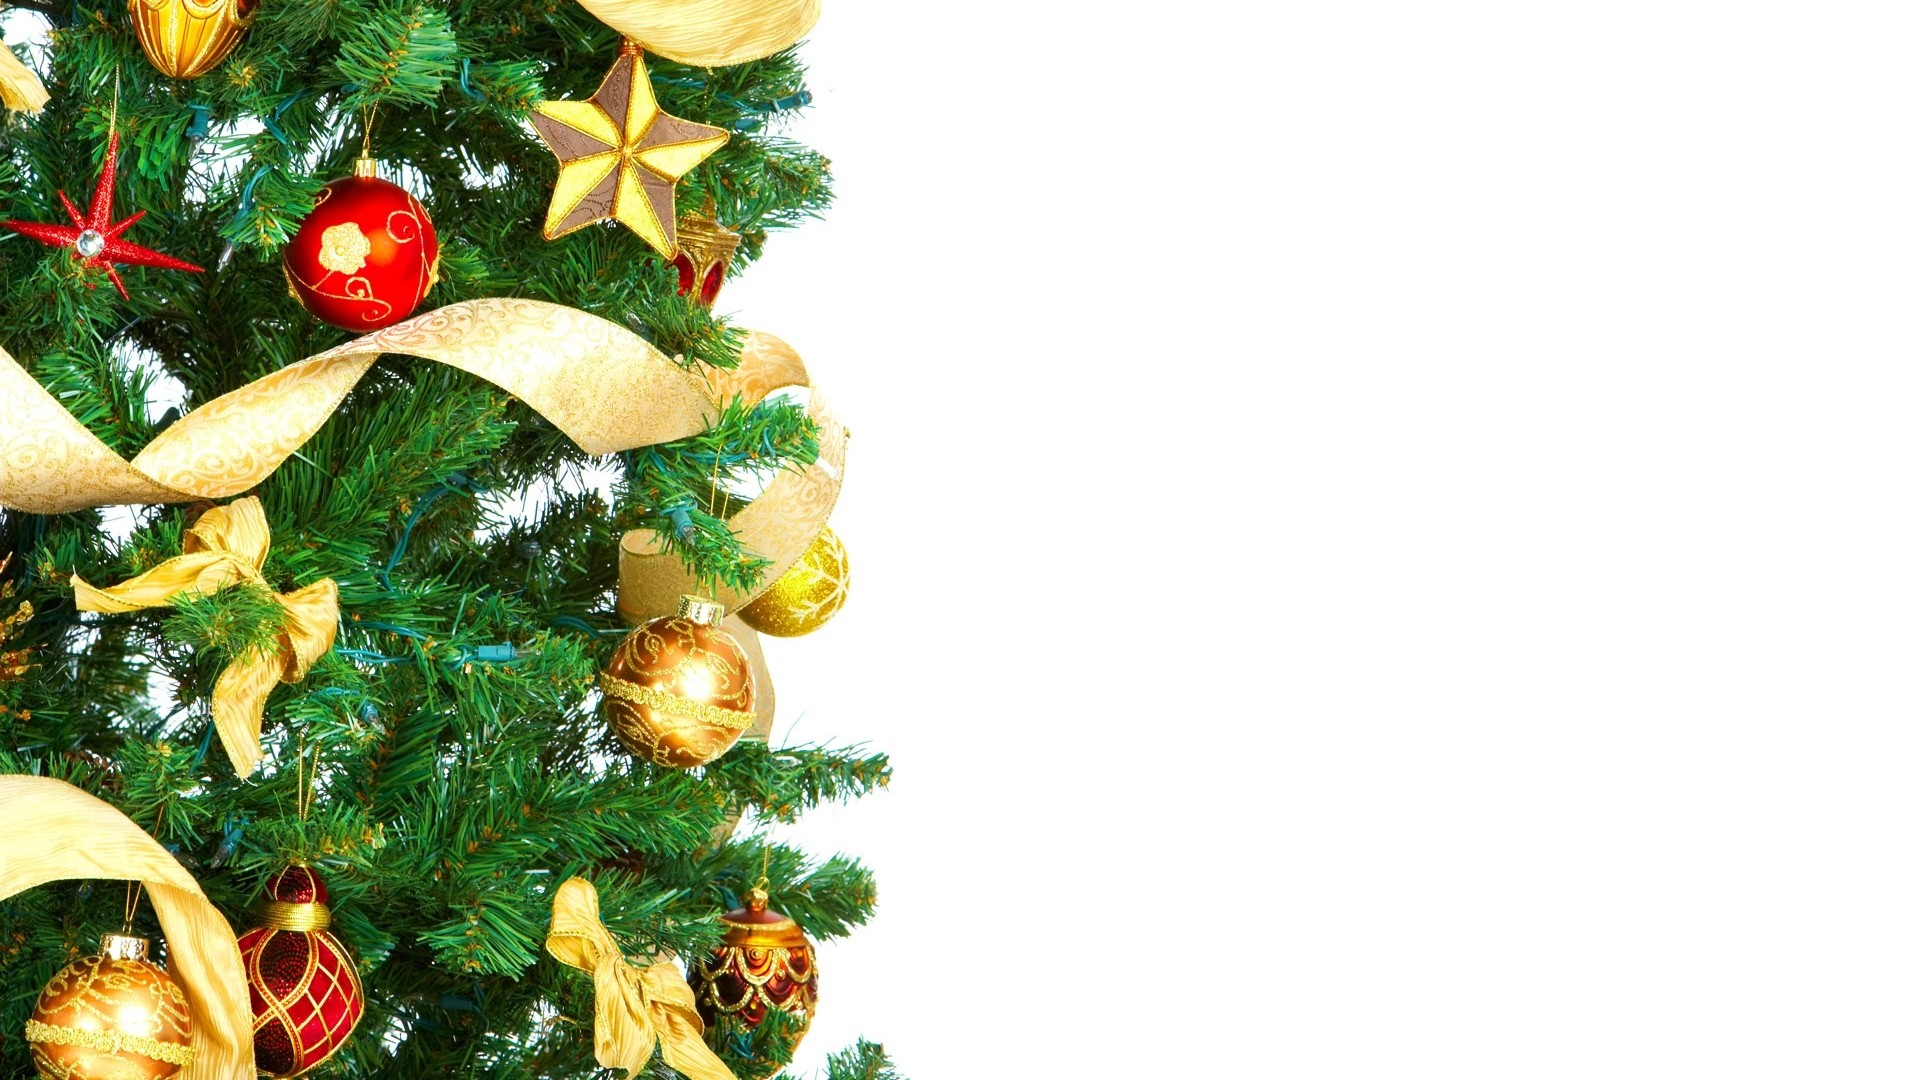 1920x1080 Christmas Tree Wallpaper 22868